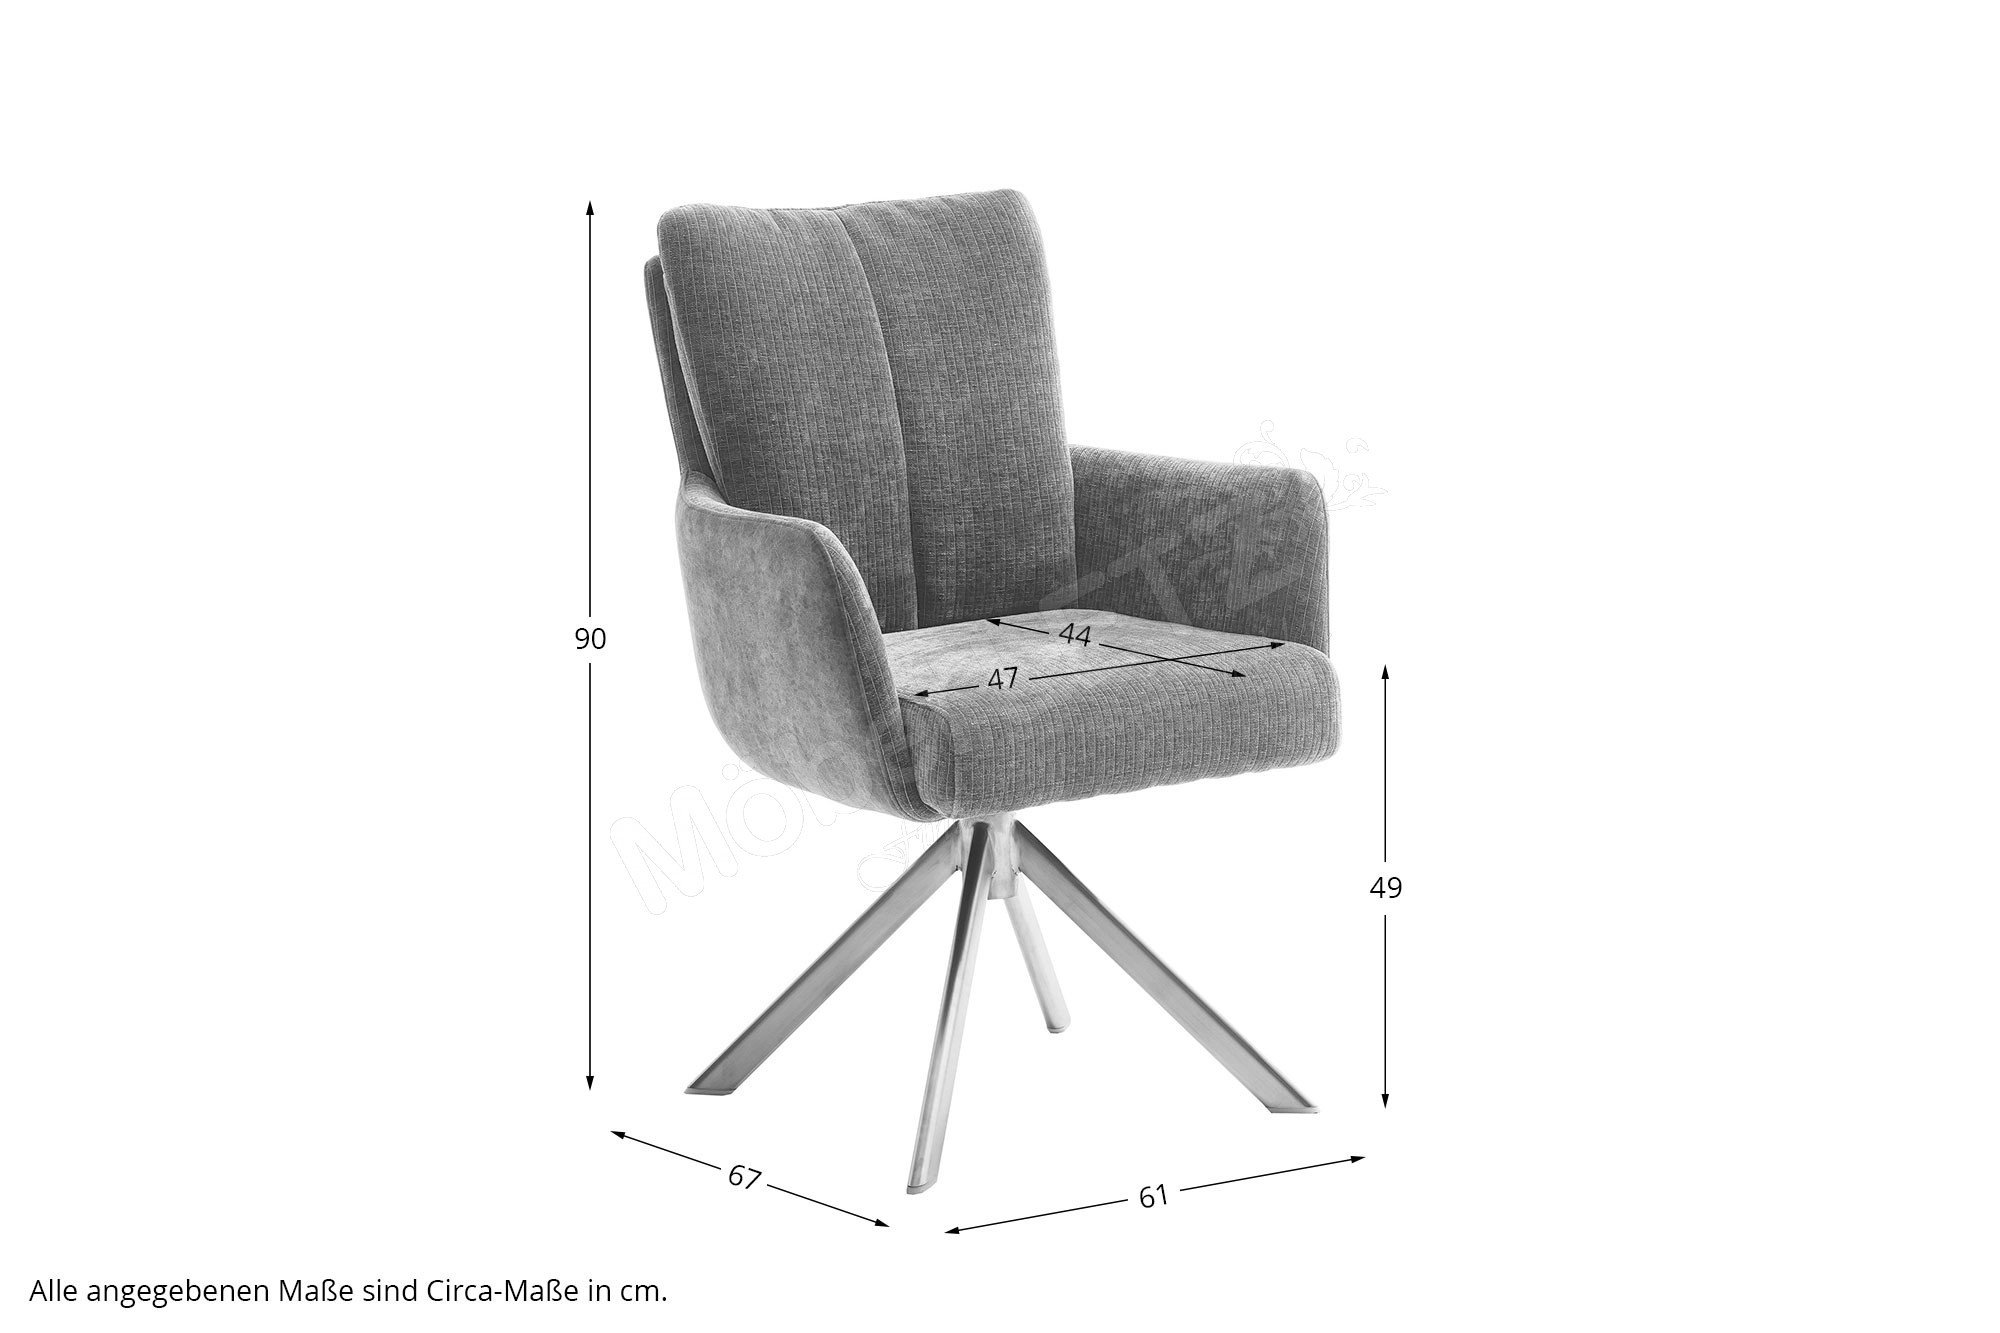 MCA furniture Stuhl Malia in Olive | Möbel Letz - Ihr Online-Shop